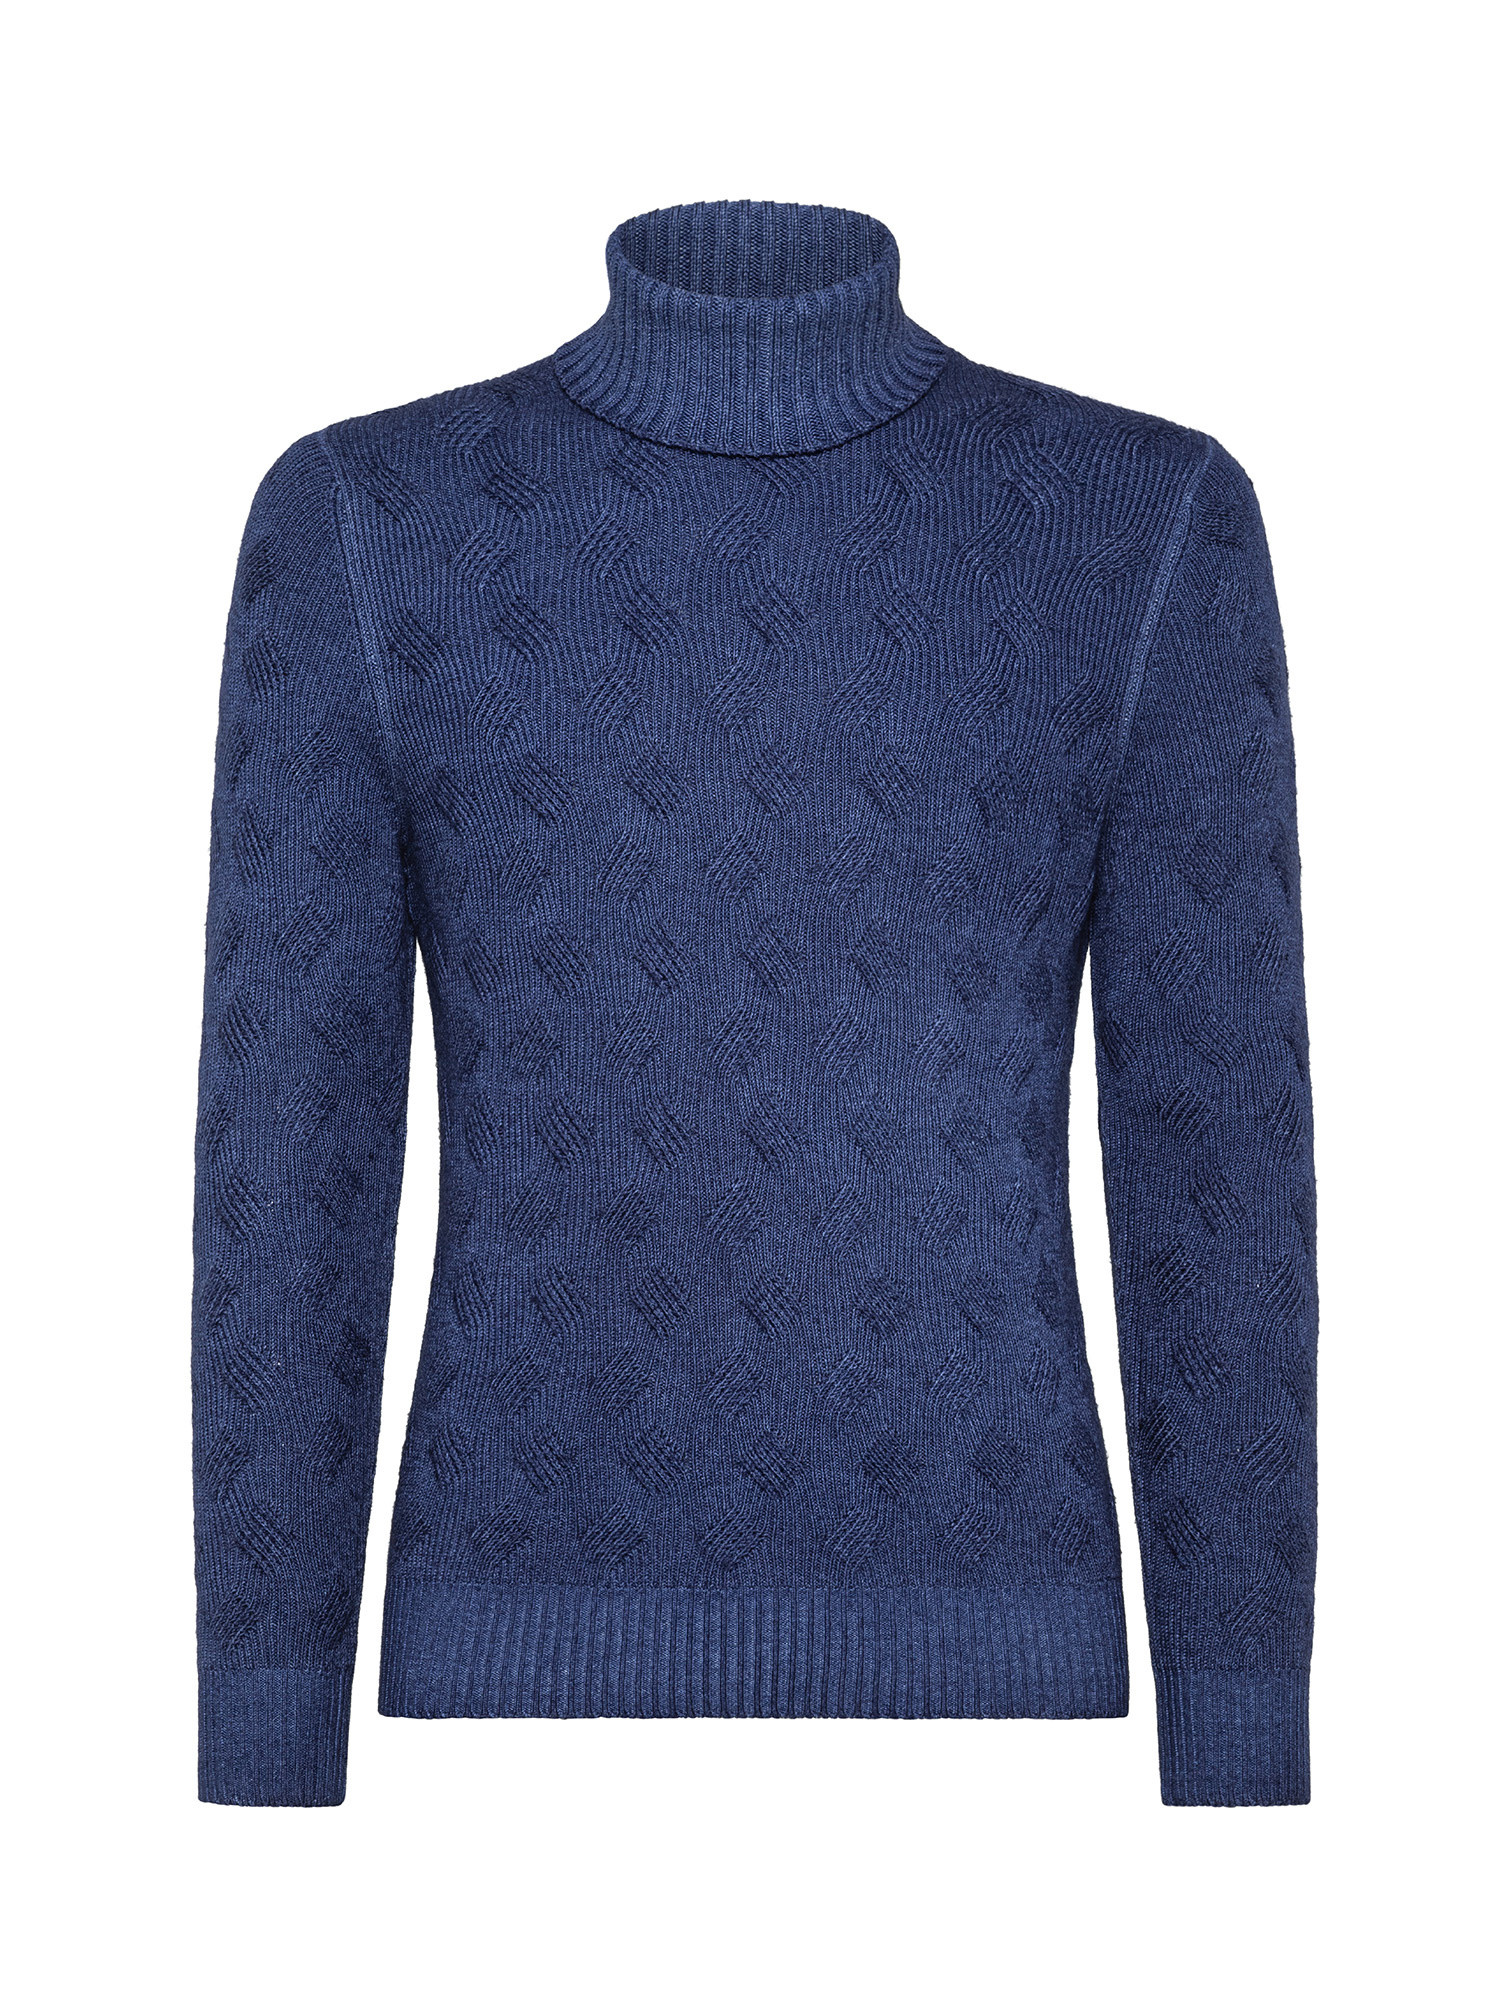 Dolcevita in lana merinos vintage 2 fili con lavorazione a trecce, Blu, large image number 0